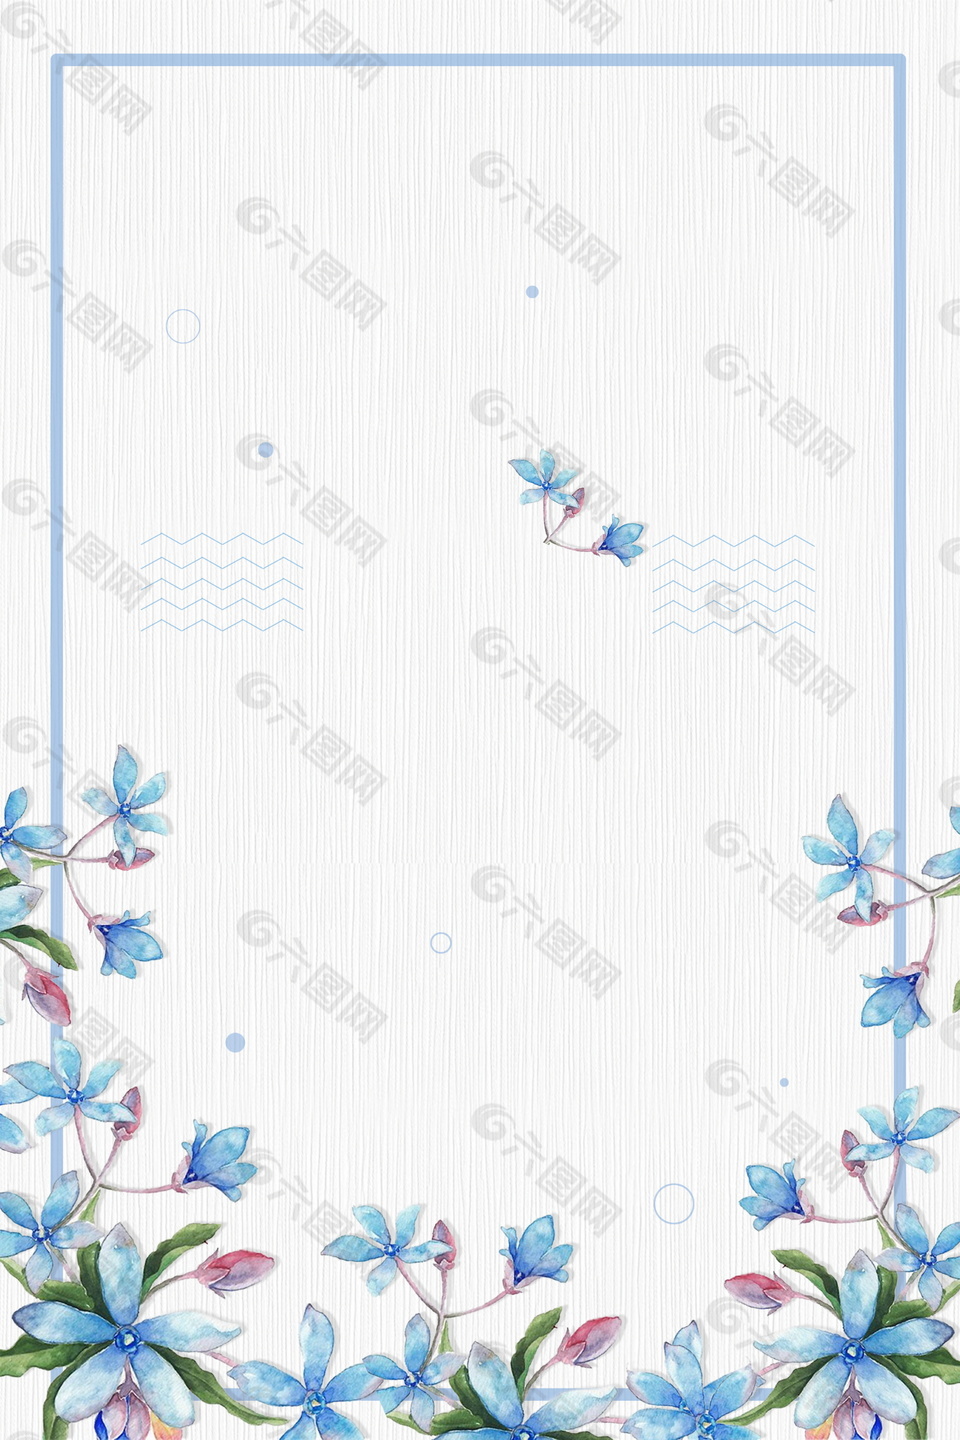 彩绘你好7月蓝色花朵边框海报背景素材